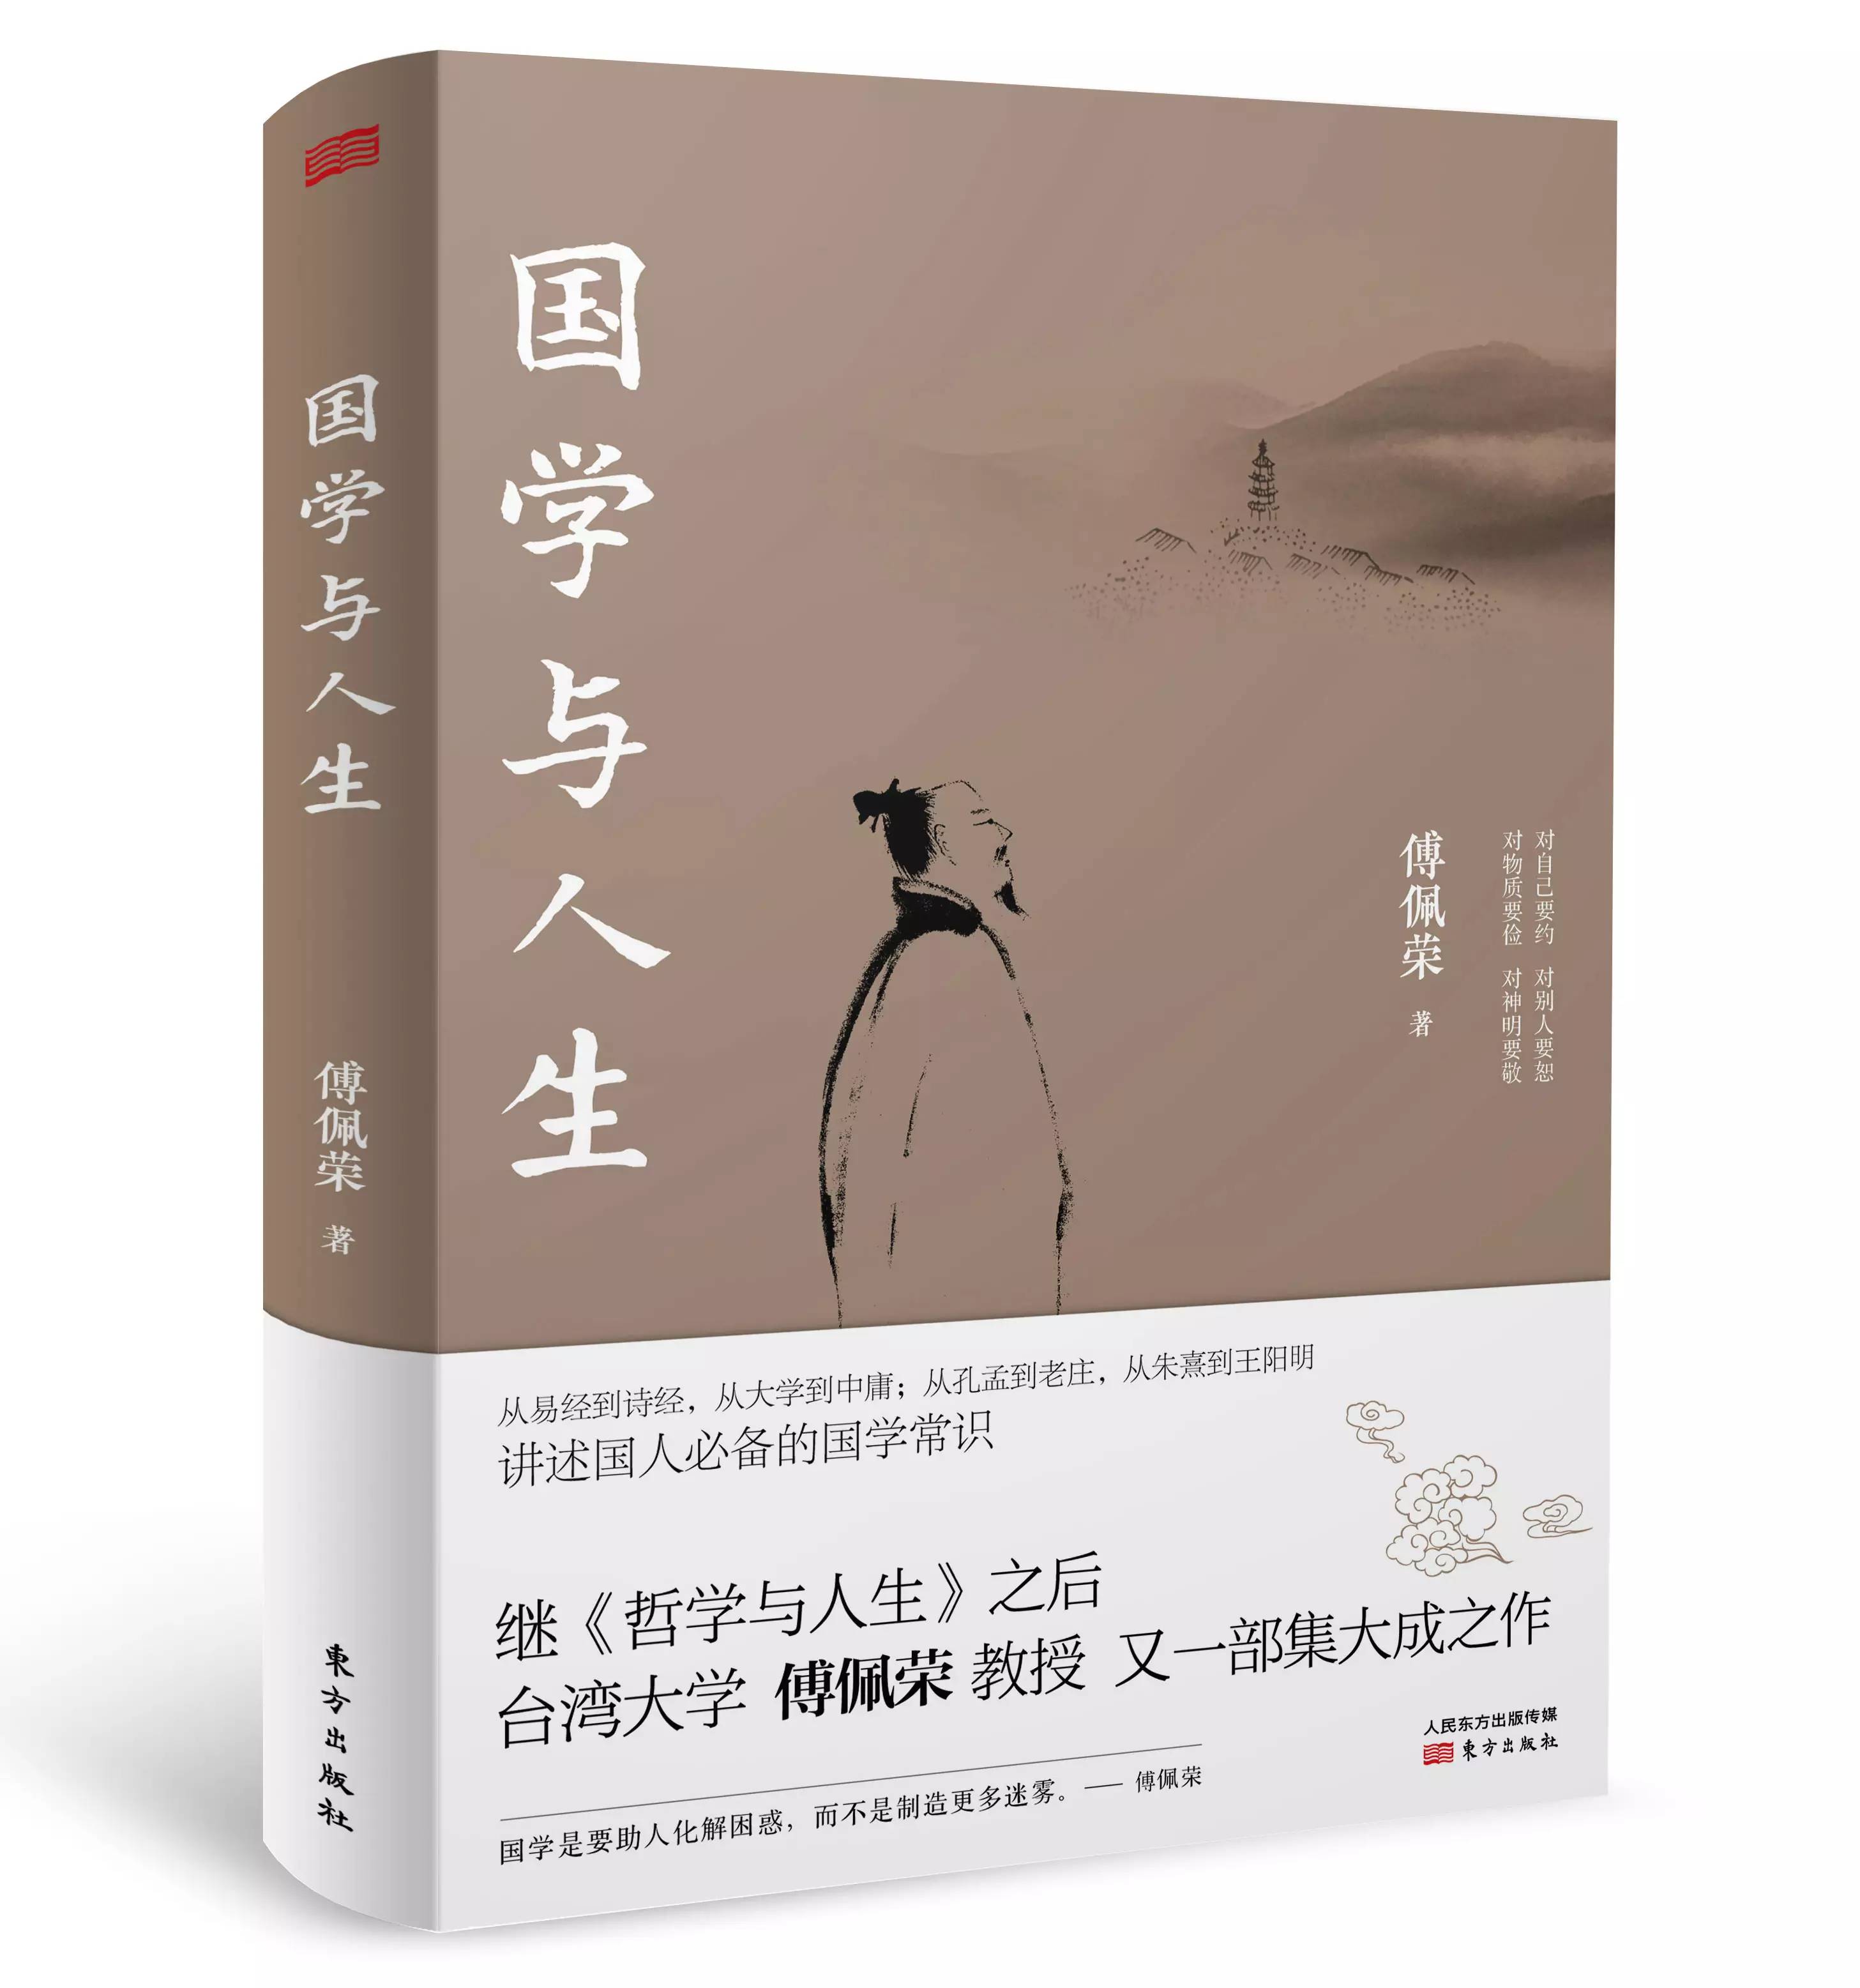 【新书】傅佩荣著《国学与人生》出版暨目录、